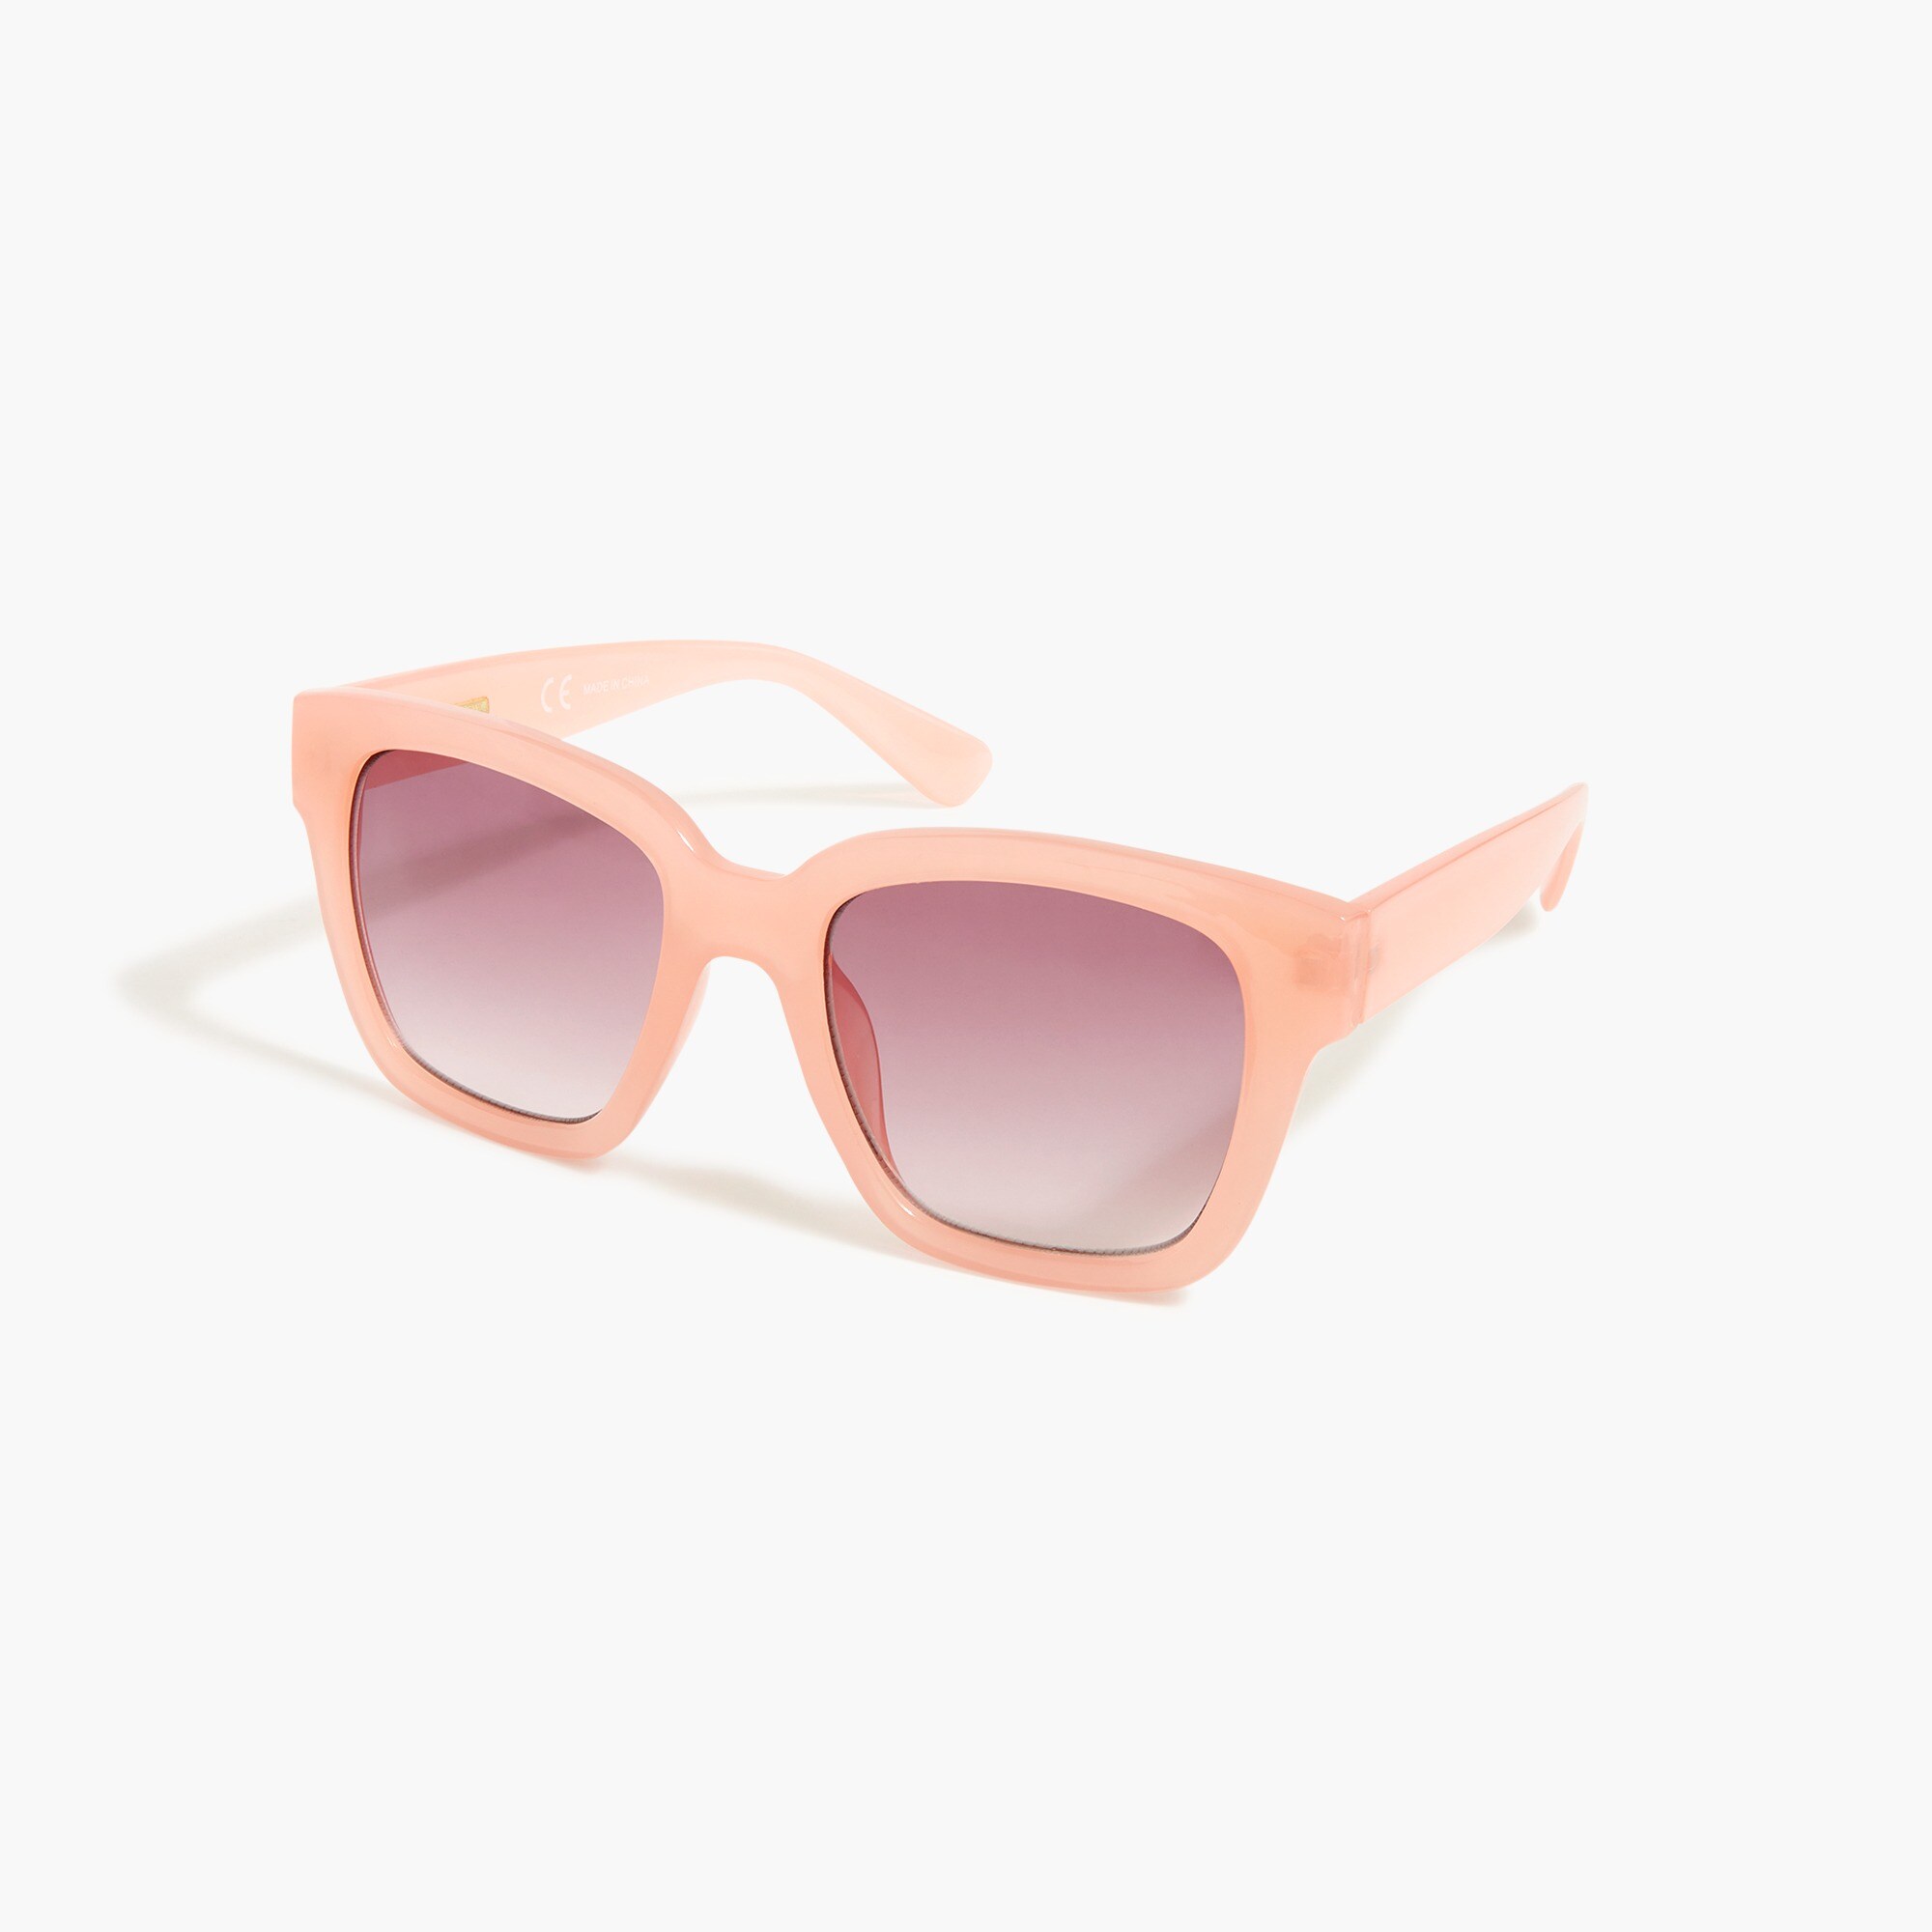 Jcrew D-frame sunglasses